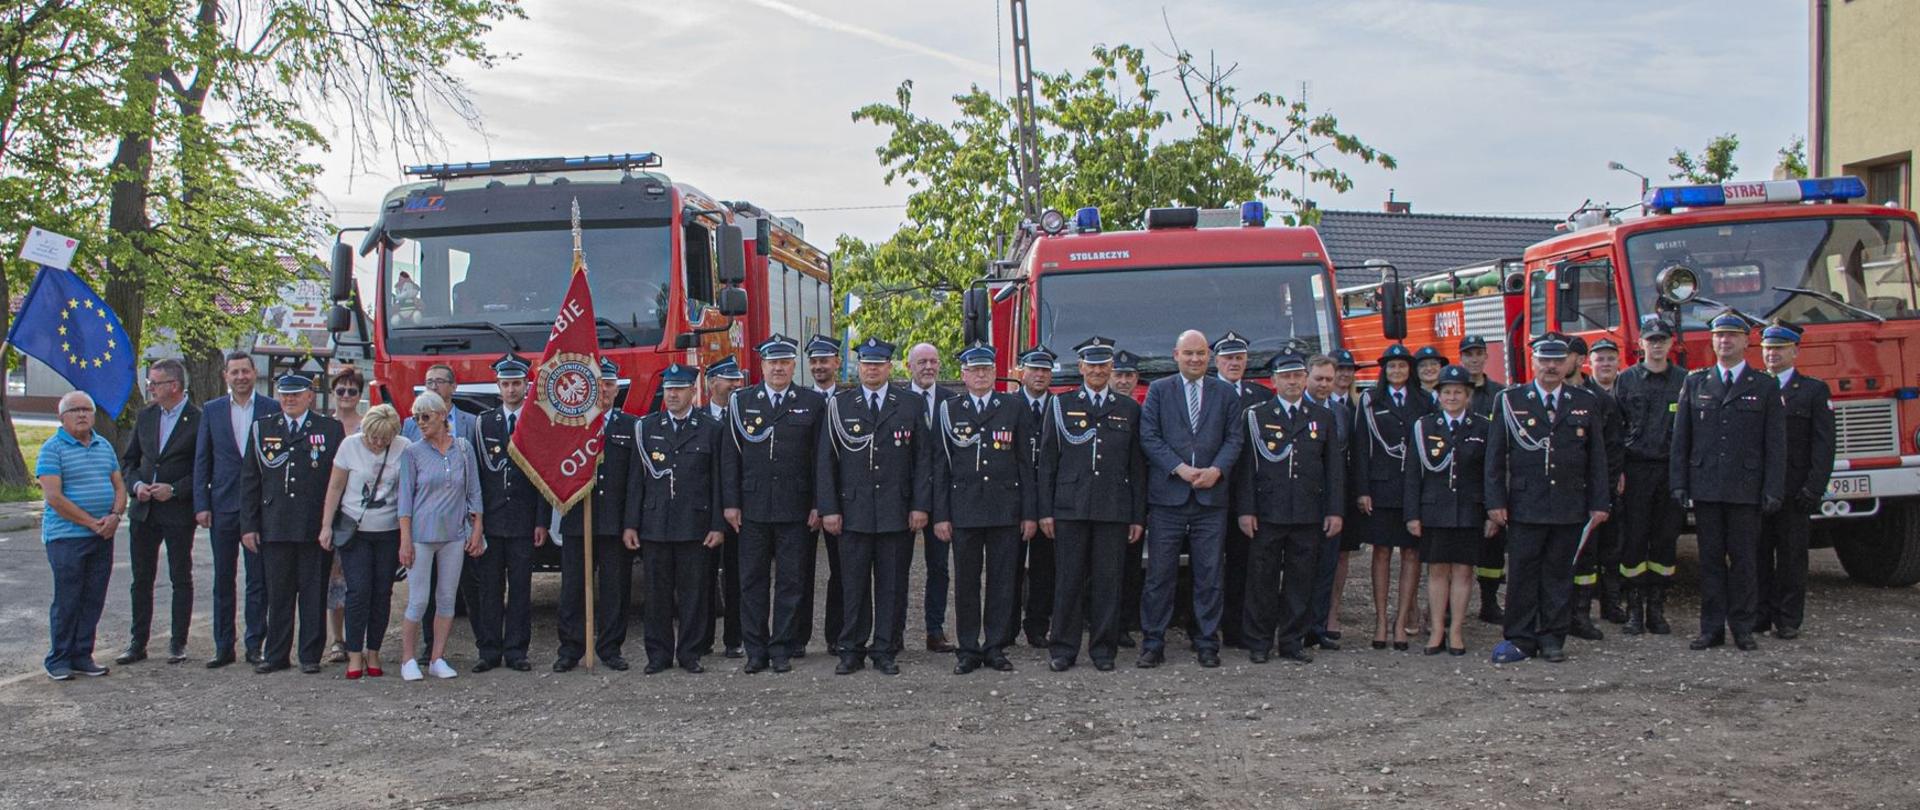 Zdjęcie przedstawia strażaków i zaproszonych gości stojących na tle samochodów strażackich.